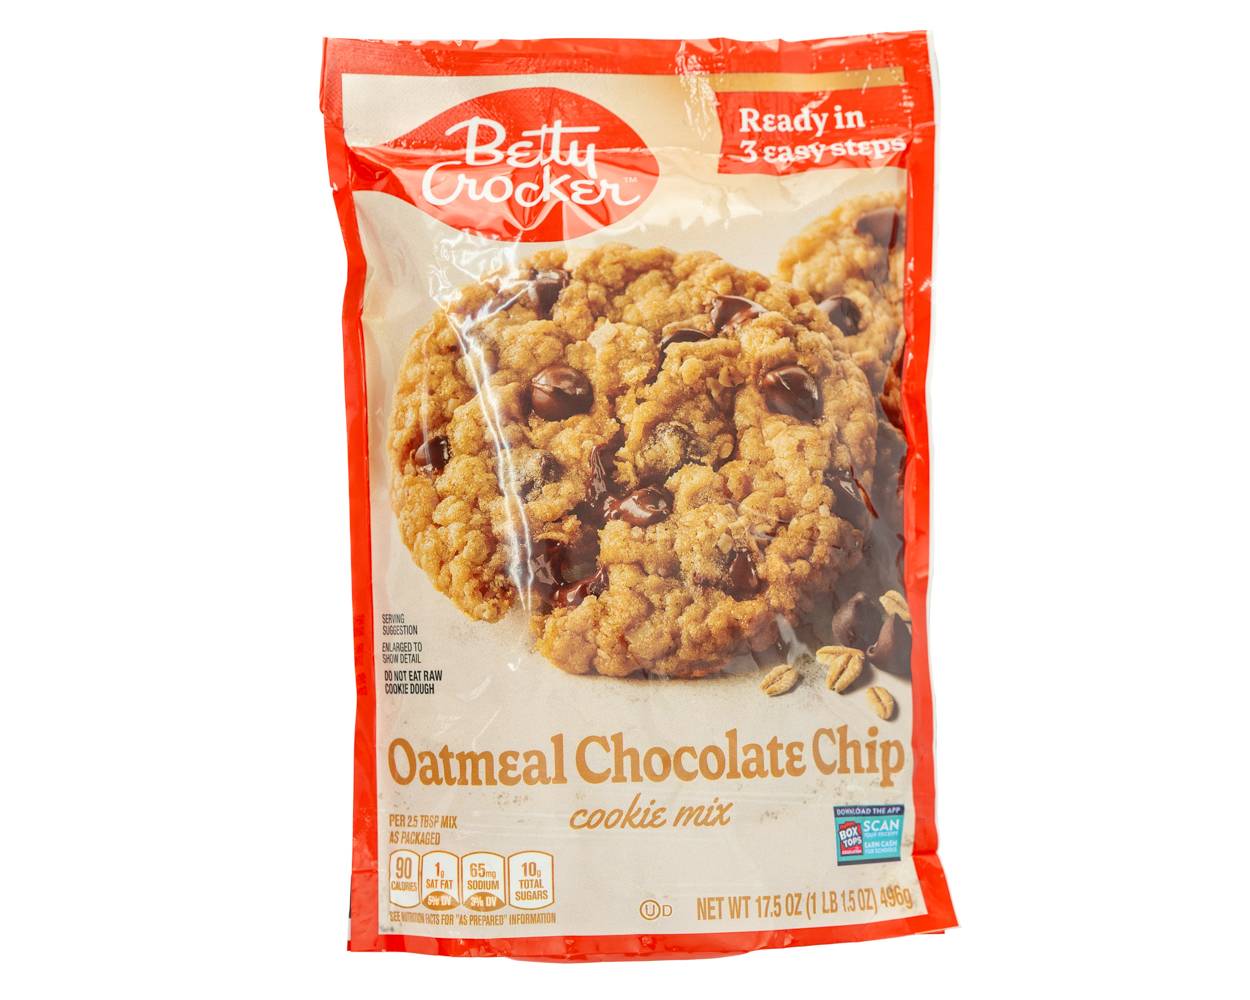 Betty crocker mezcla para galletas de avena con chocolate (doypack 496 g)